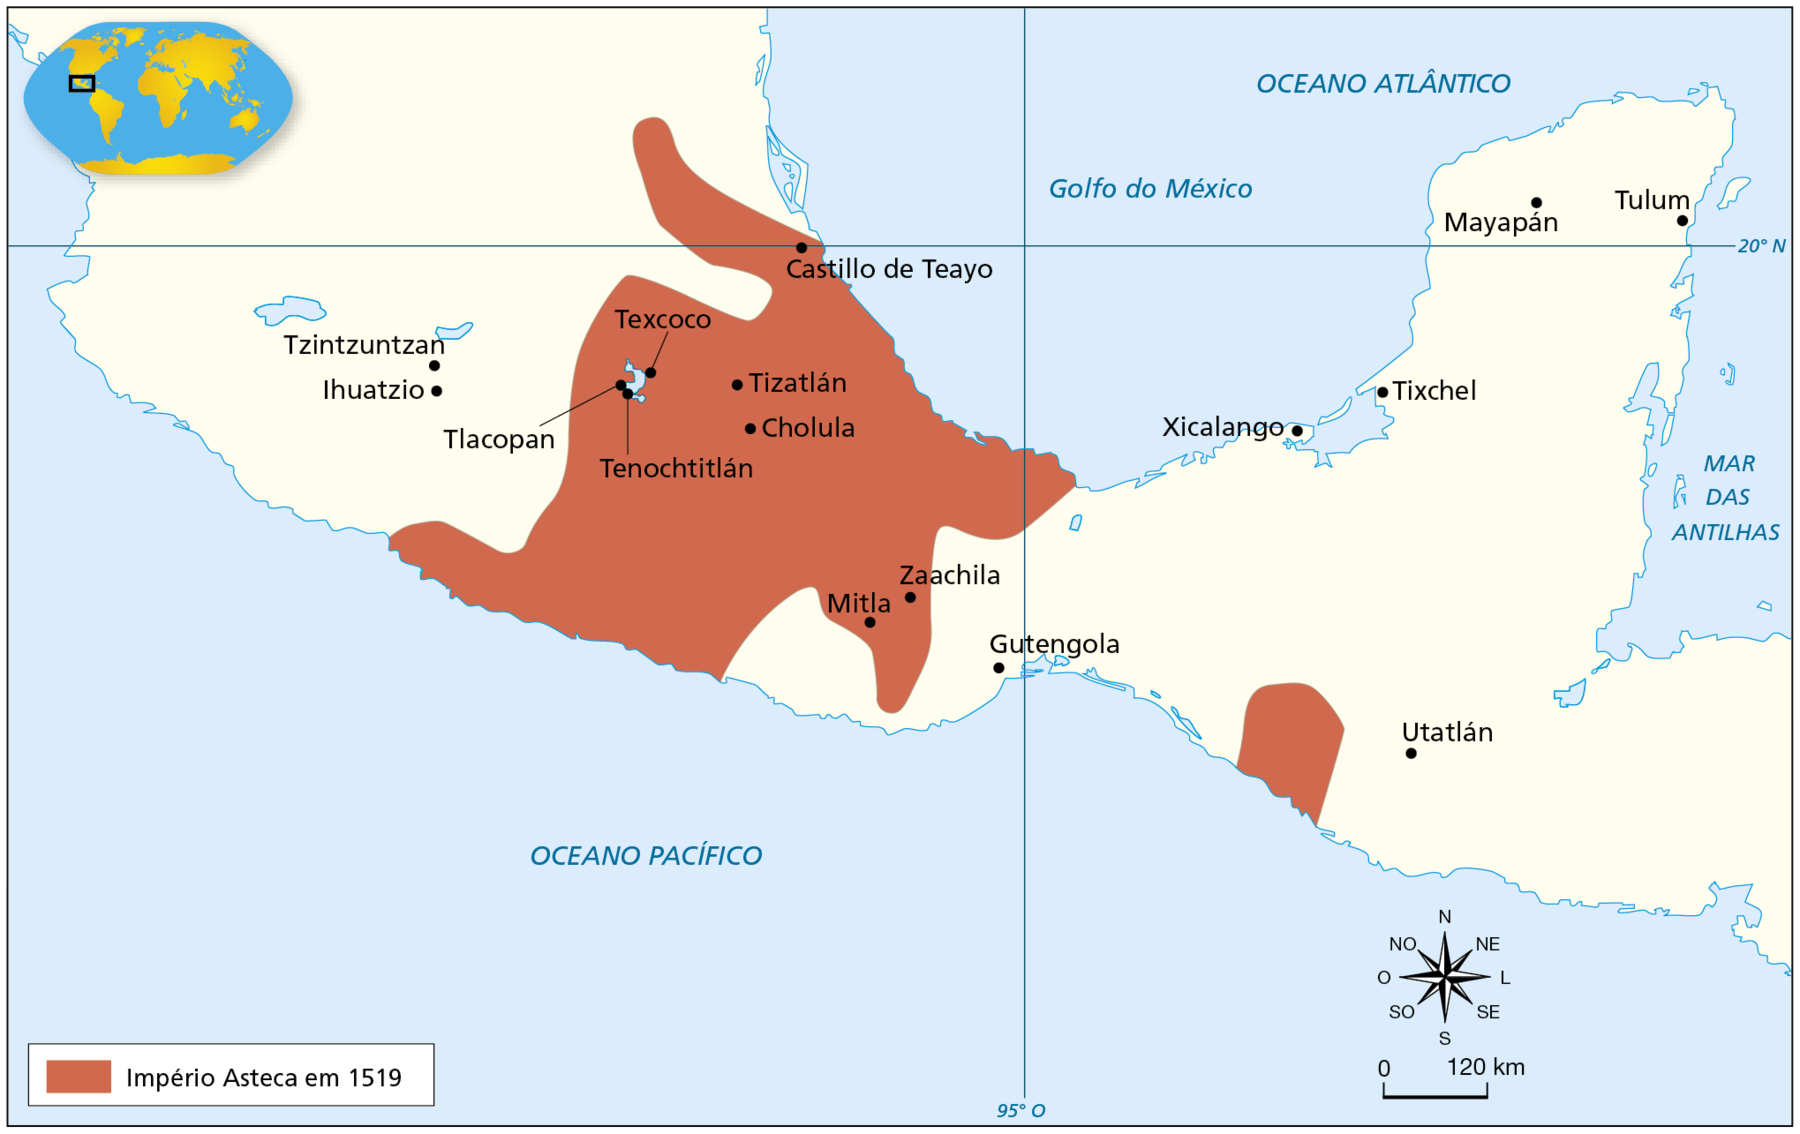 Mapa. O Império Asteca. Século 16. Mapa representando a região da Mesoamérica. Dois territporios, um território no centro dessa região  e outro mais ao sul, estão destacados em vermelho. Na legenda, em vermelho, 'Império Asteca em 1519'.  O trecho destacado no mapa corresponde à parte central do território que hoje corresponde ao México, tendo ao norte, o Golfo do México e, ao sul, o Oceano Pacífico. Destaque para as localidades de: Castilho de Teayo (na costa voltada para o Golfo do México), Texcoco (ao norte do Lago Texcoco), Tenochtitlán e Tlacopan (ao sul do Lago Texcoco); Tizatlan e Cholula (a leste do Lago Texcoco) Mitla e Zaachila (no sudeste do território destacado). Outro território menor destacado em vermelho está localizado na costa voltada para o Pacífico, no território que hoje corresponde à Guatemala. Nessa área não há cidades destacadas. Há outras cidades destacadas fora da área do Império Asteca: a leste do Lago Texcoco, Tzintzuntzan e Ihuatzio; a leste de Mitla, Gutengola; a leste de Gutengola, Utatlán. Na Península de Yucatán, Xicalango, Tixchel, Mayapán e Tulum. No canto inferior direito, rosa dos ventos e escala de 0 a 120 quilômetros.